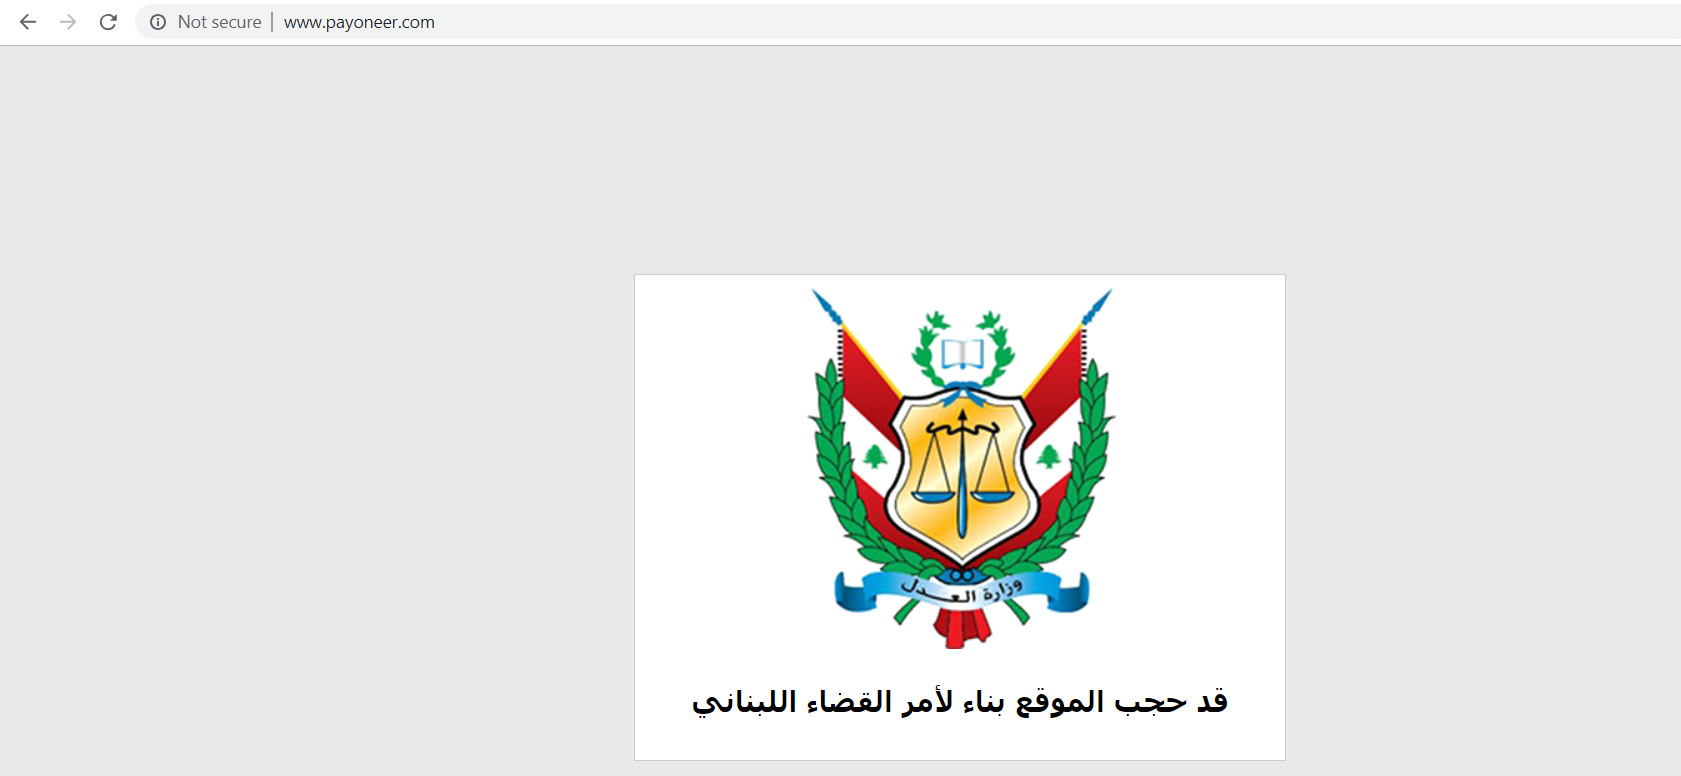 payoneer website blocked in lebanon